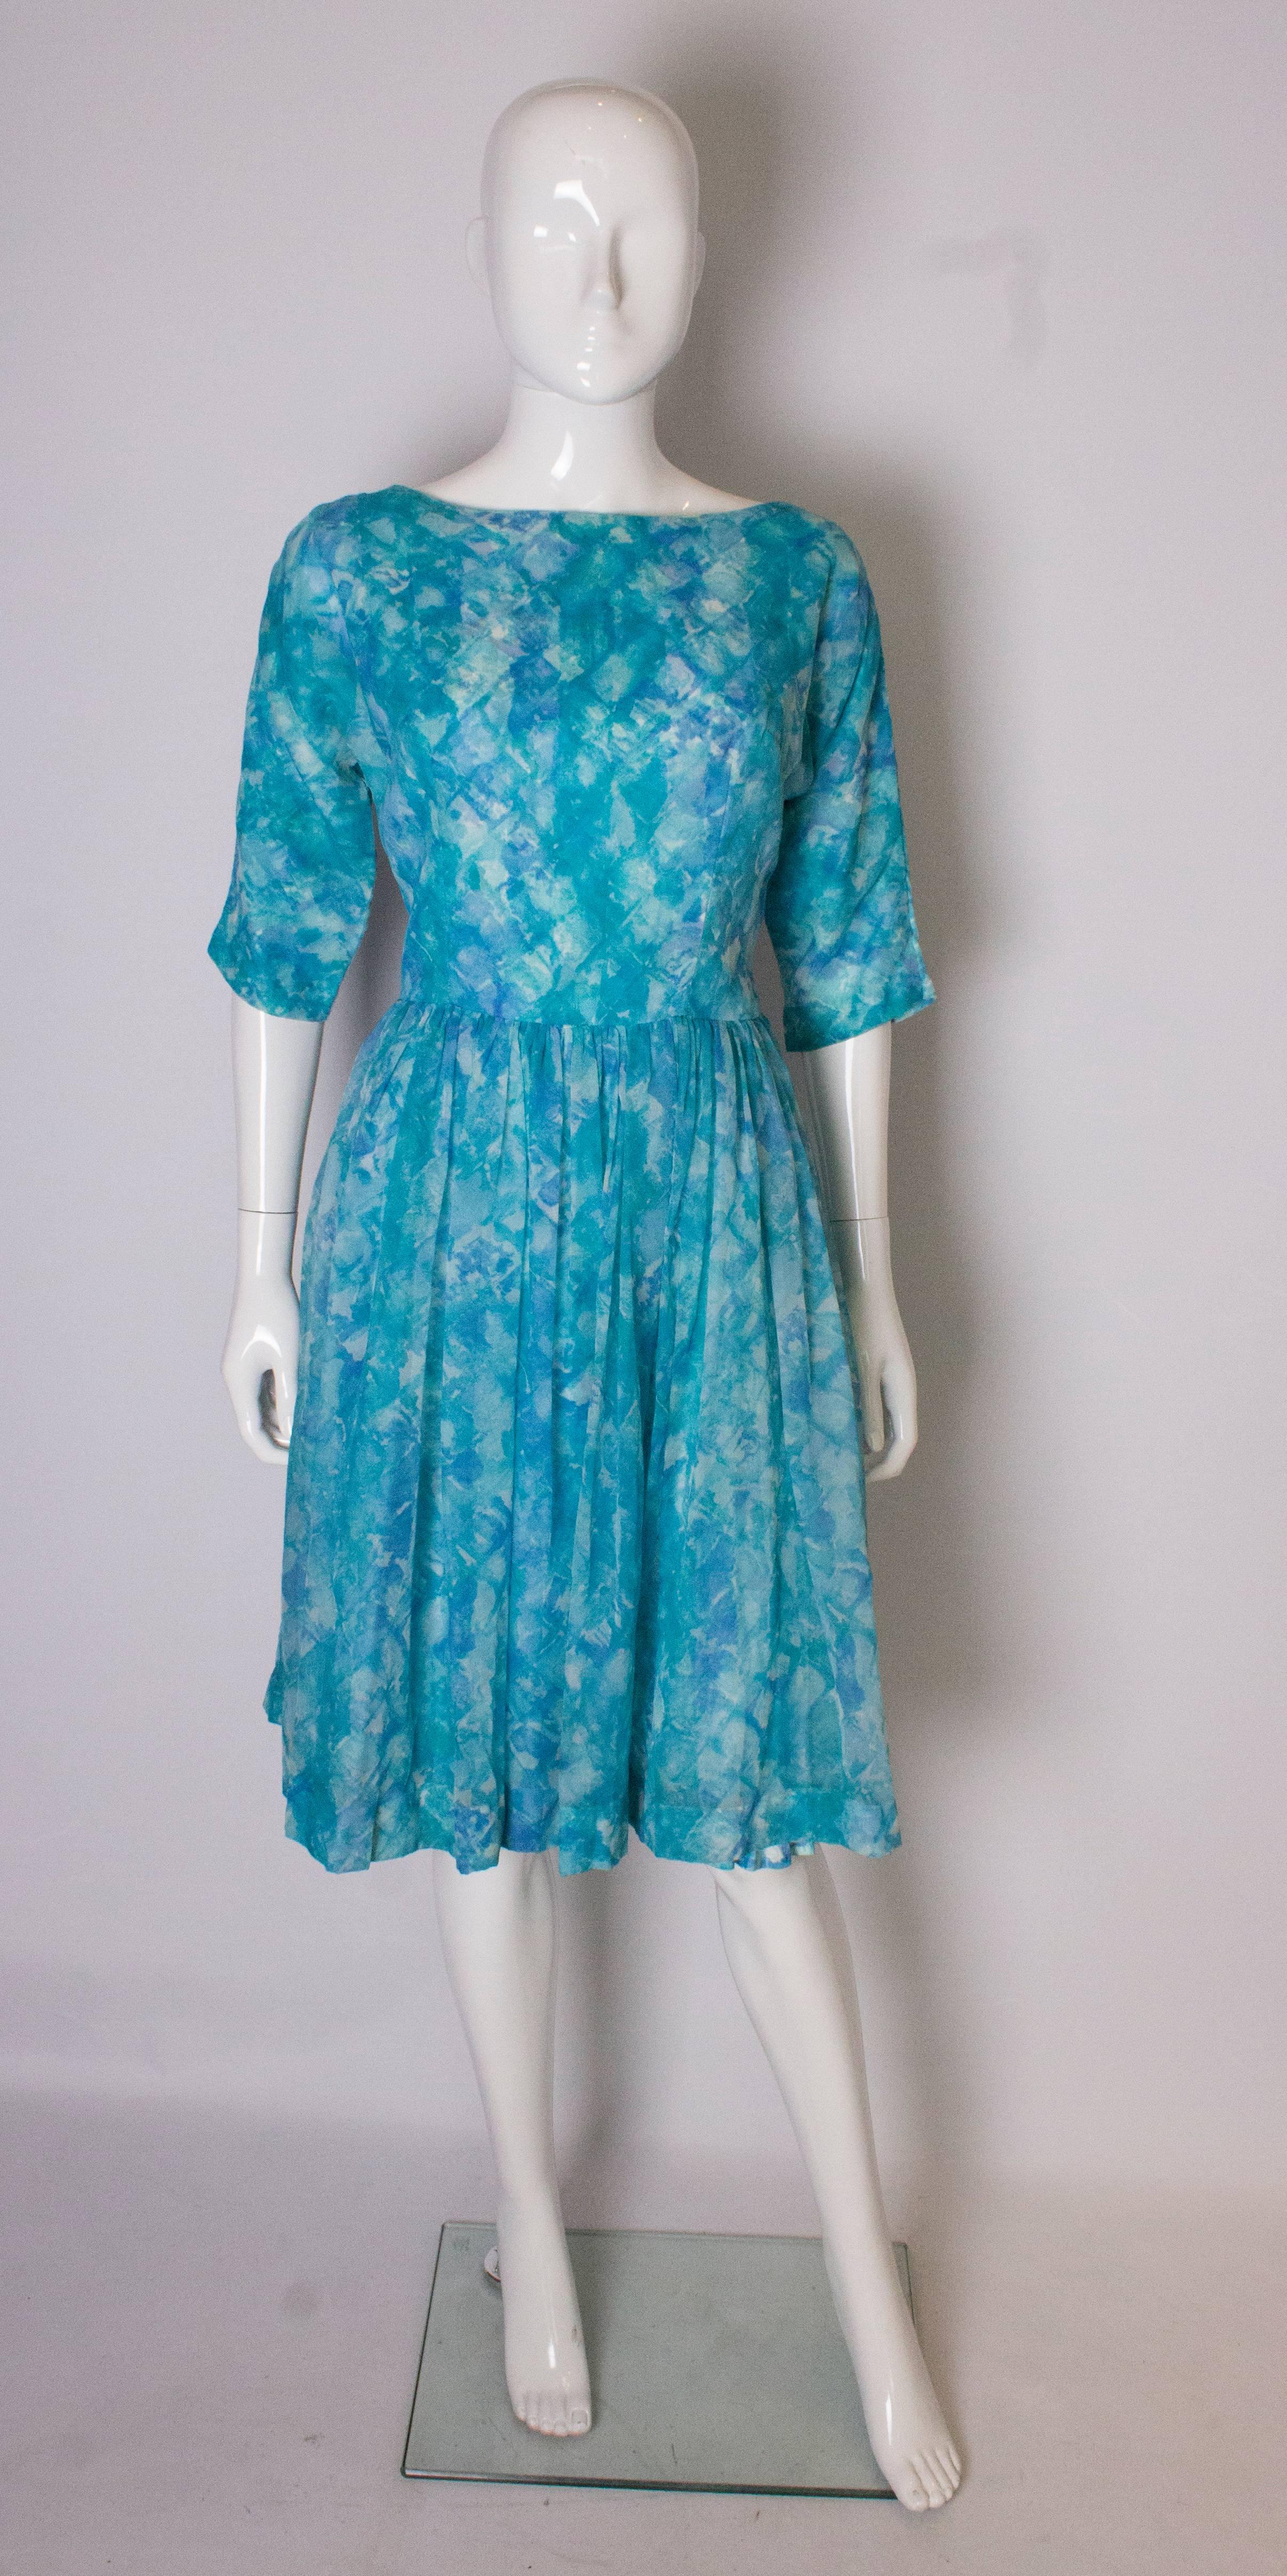 Un grand cocktail swing vintage  robe dans de multiples nuances de bleu. La robe comporte une sous-jupe imprimée dans le même motif que la surjupe, et une jupe en cuir  a une fermeture éclair centrale au dos, des manches aux coudes et des anneaux de